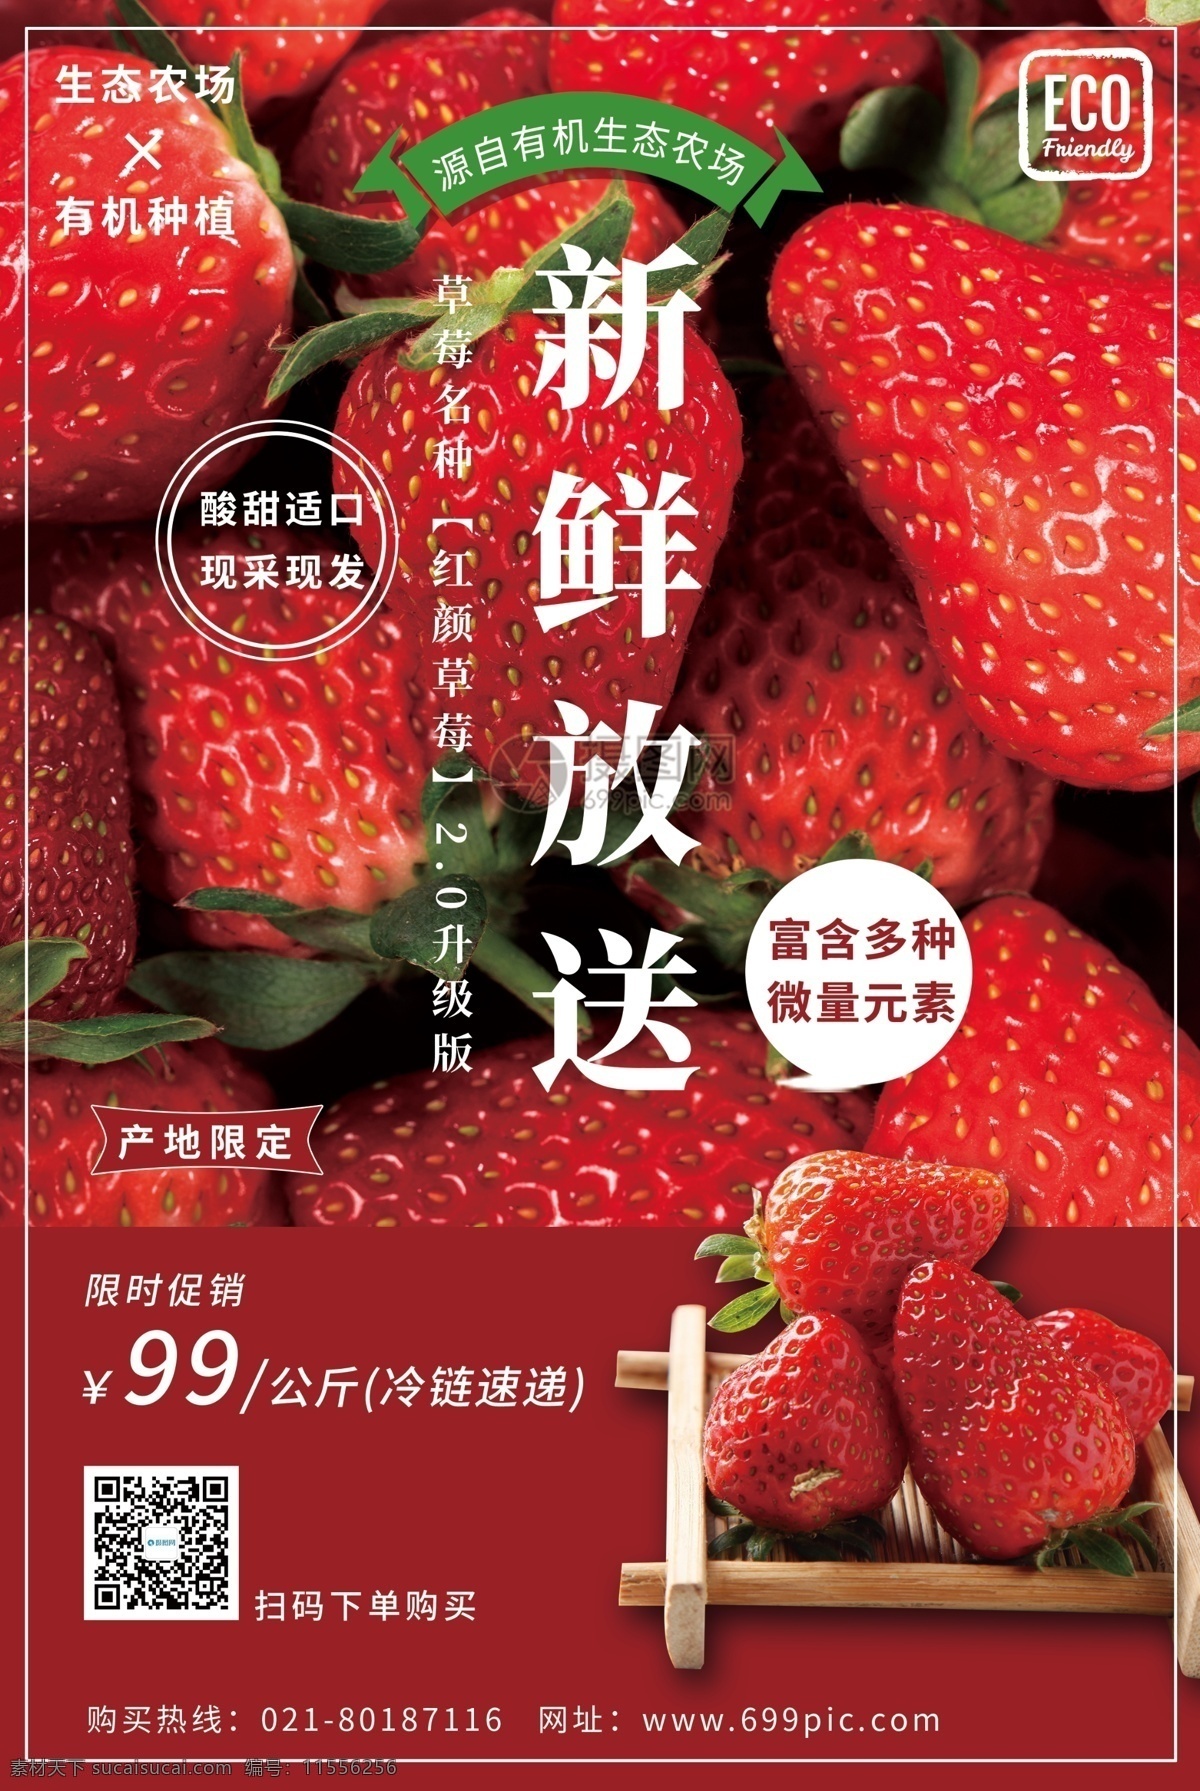 新鲜 水果 草莓 海报 新鲜水果 新鲜草莓 原生态 绿色食品 健康 下单购买 现采现摘 草莓采摘 冷链配送 食物 食品海报 草莓促销